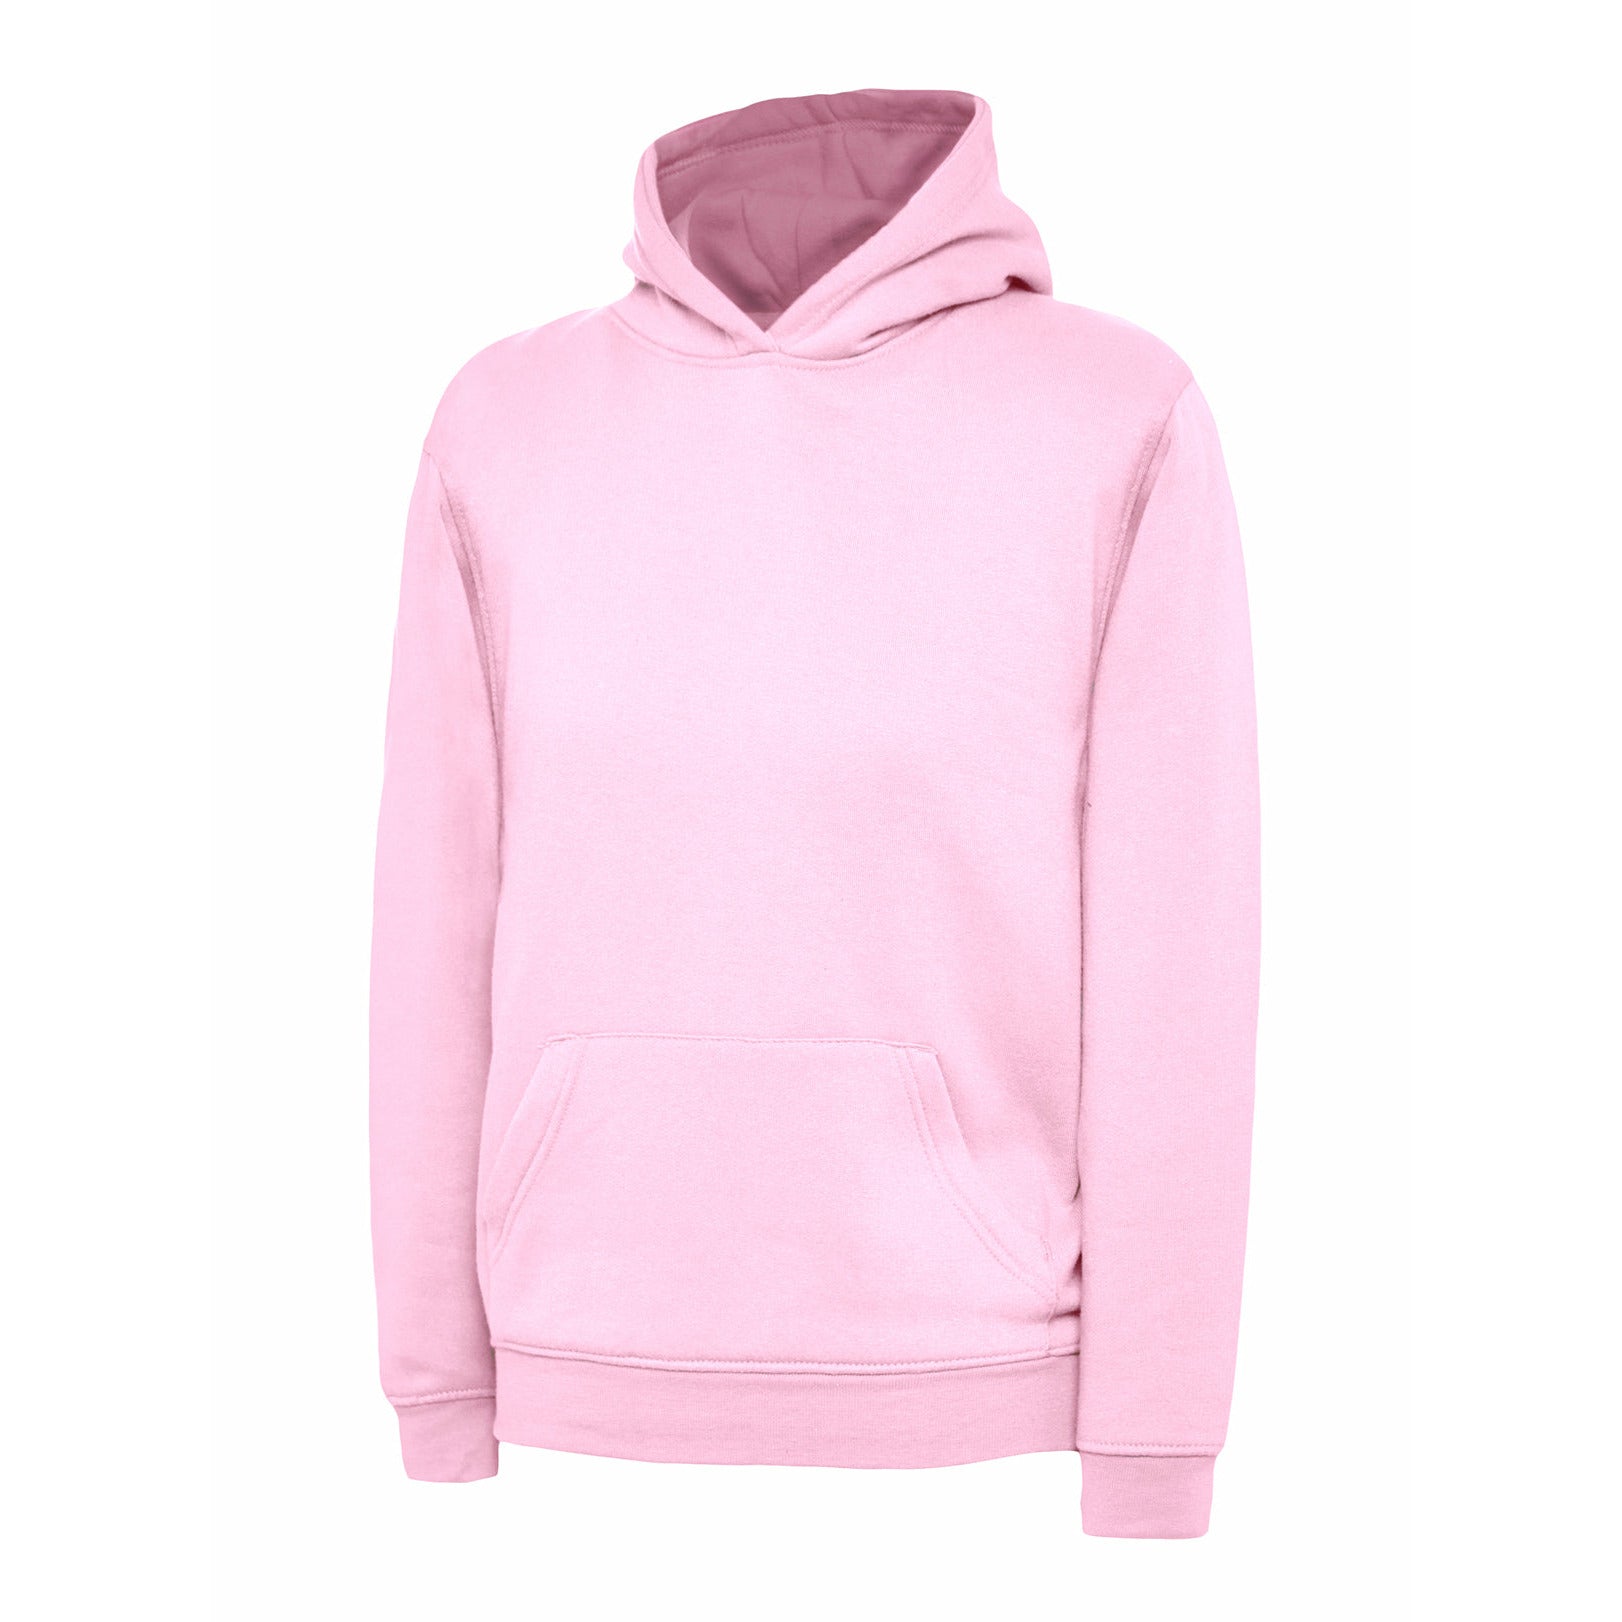 The UX Children’s Hooded Sweatshirt - Pink